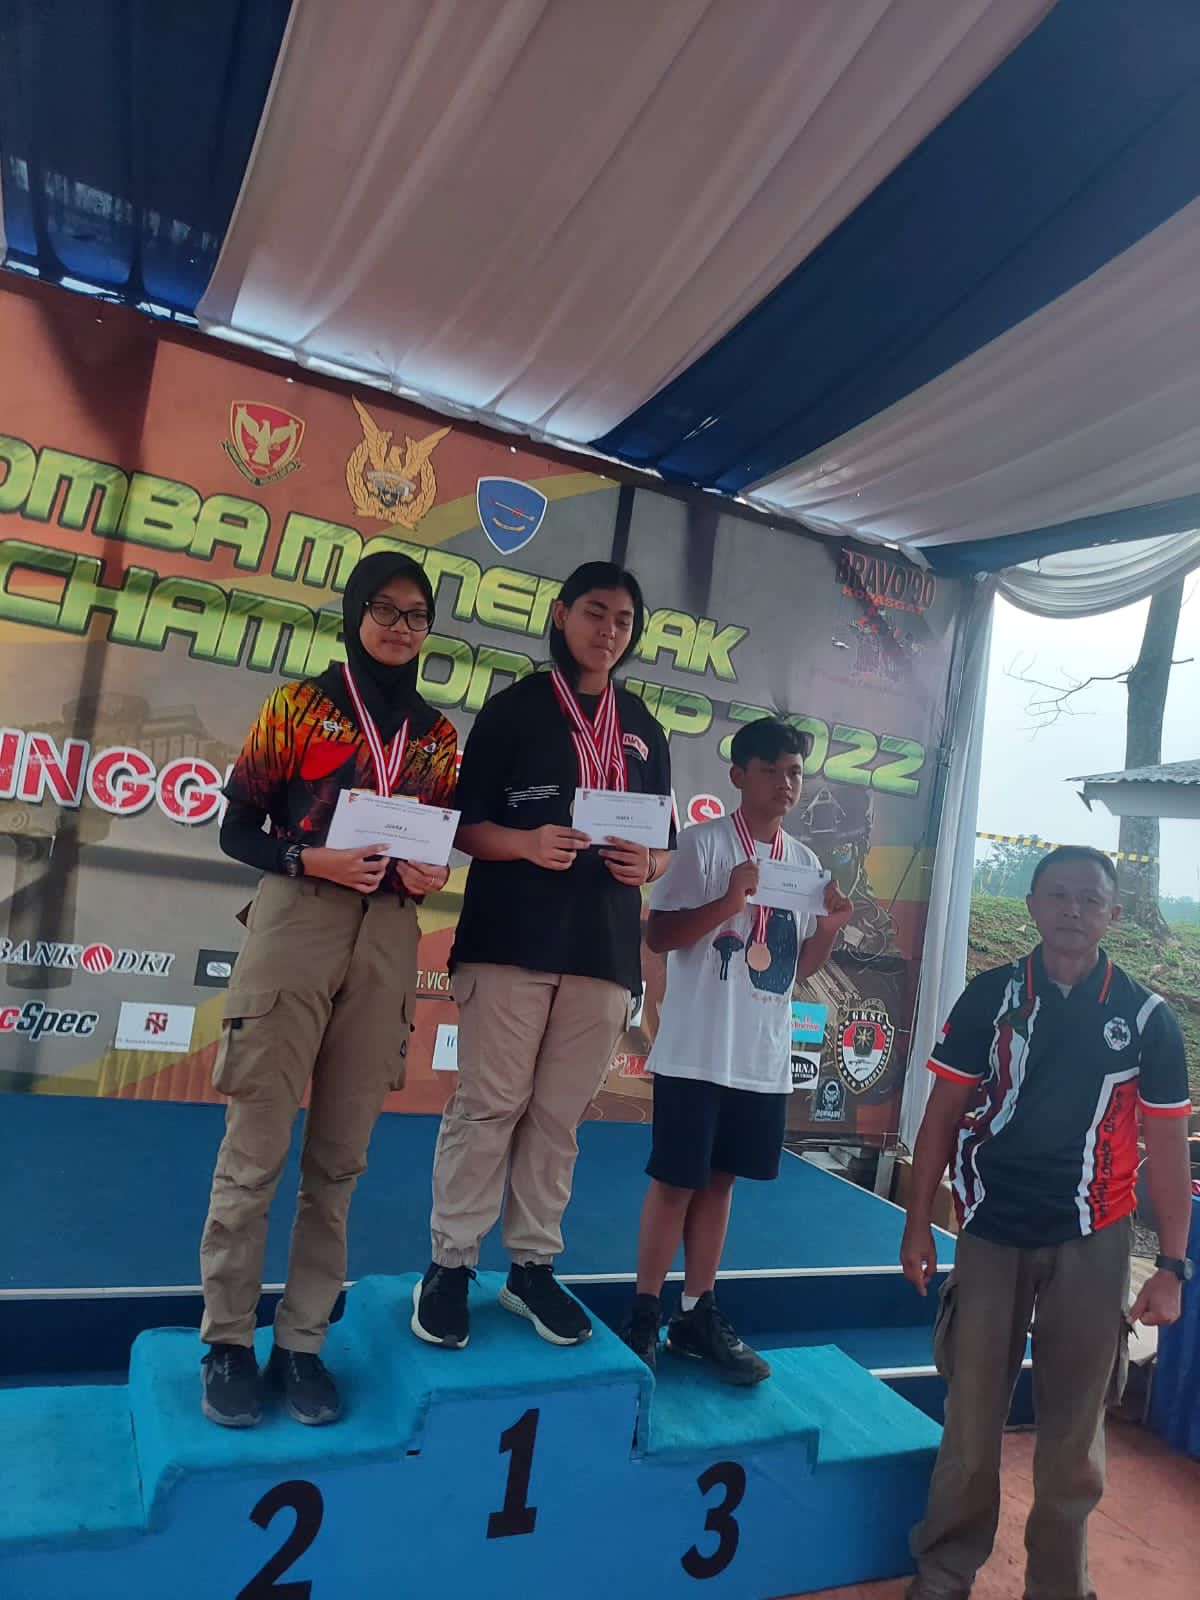 Keiraia, Peserta Didik SMAIT Raudhatul Jannah Cilegon Berhasil Meraih Prestasi di Ajang Lomba Bravo Shooting Championship 2022